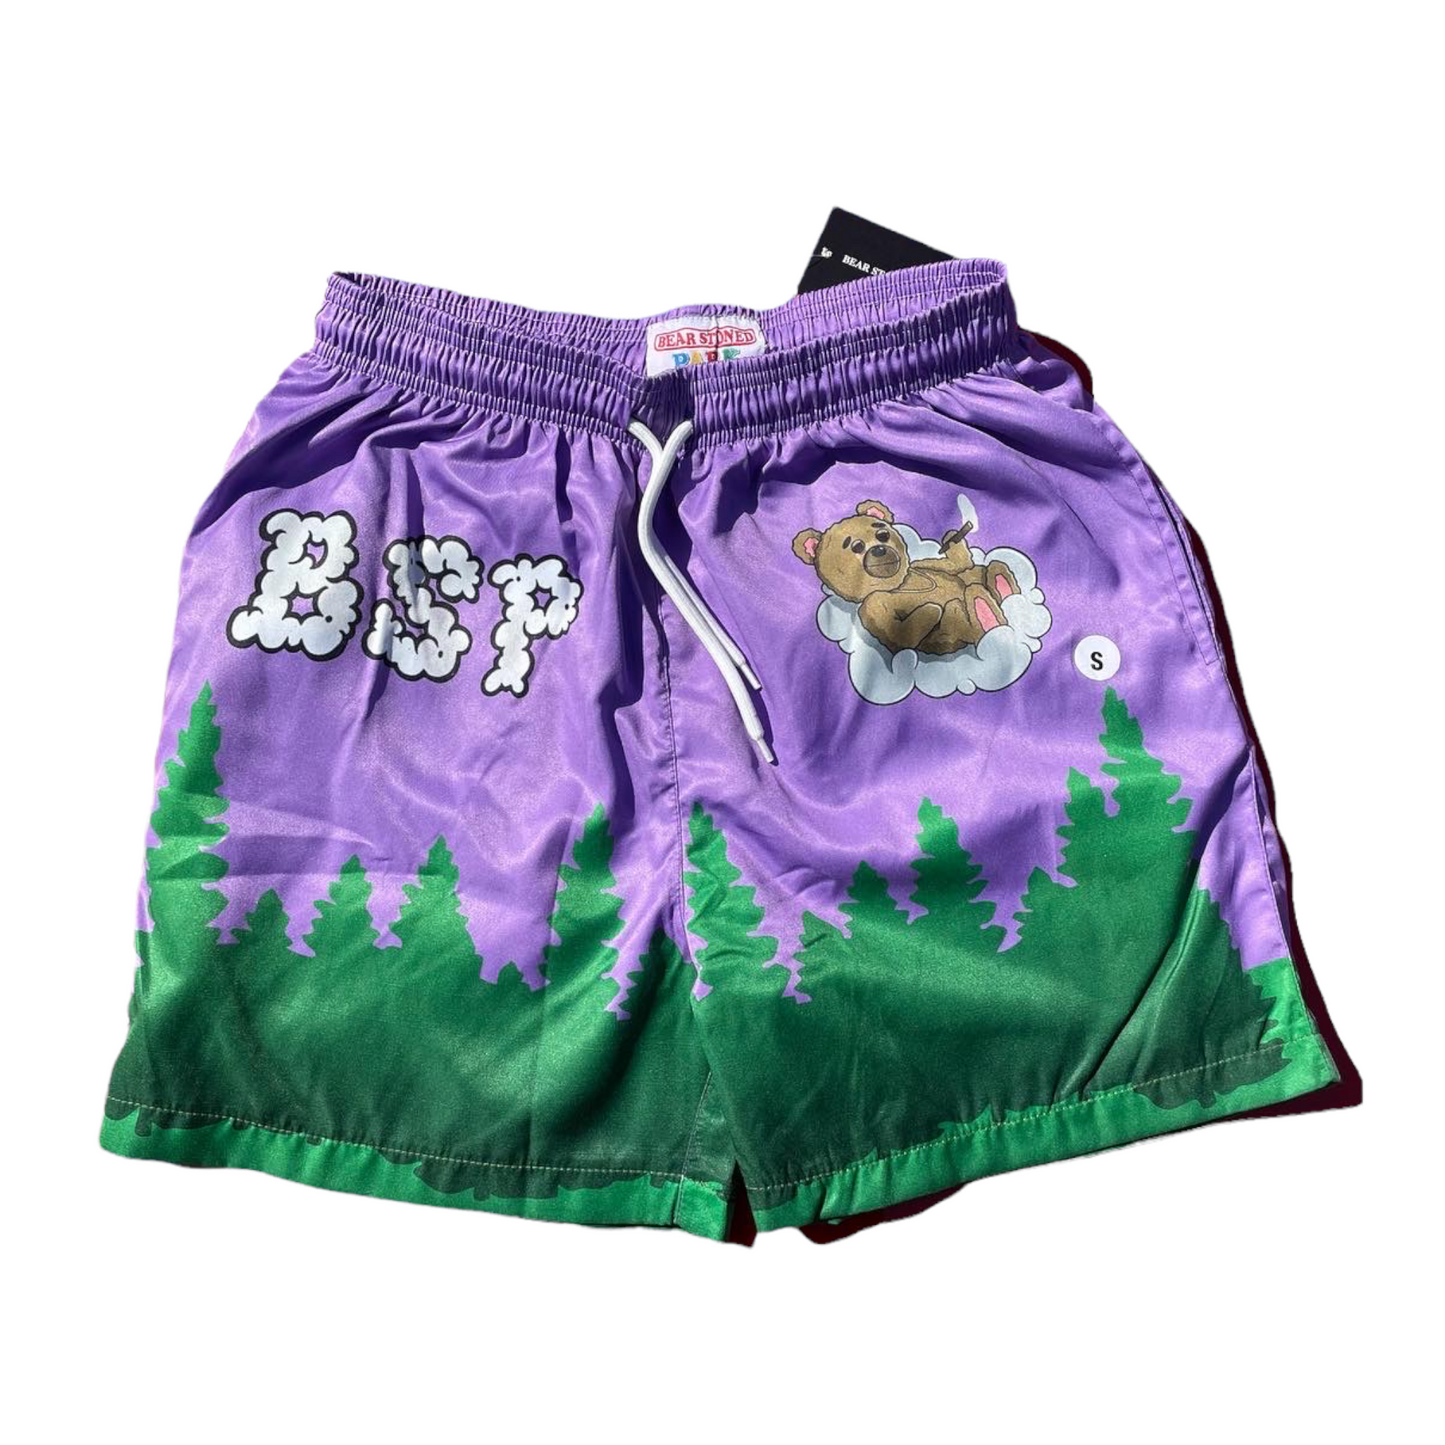 Bear Stoned Beach Shorts